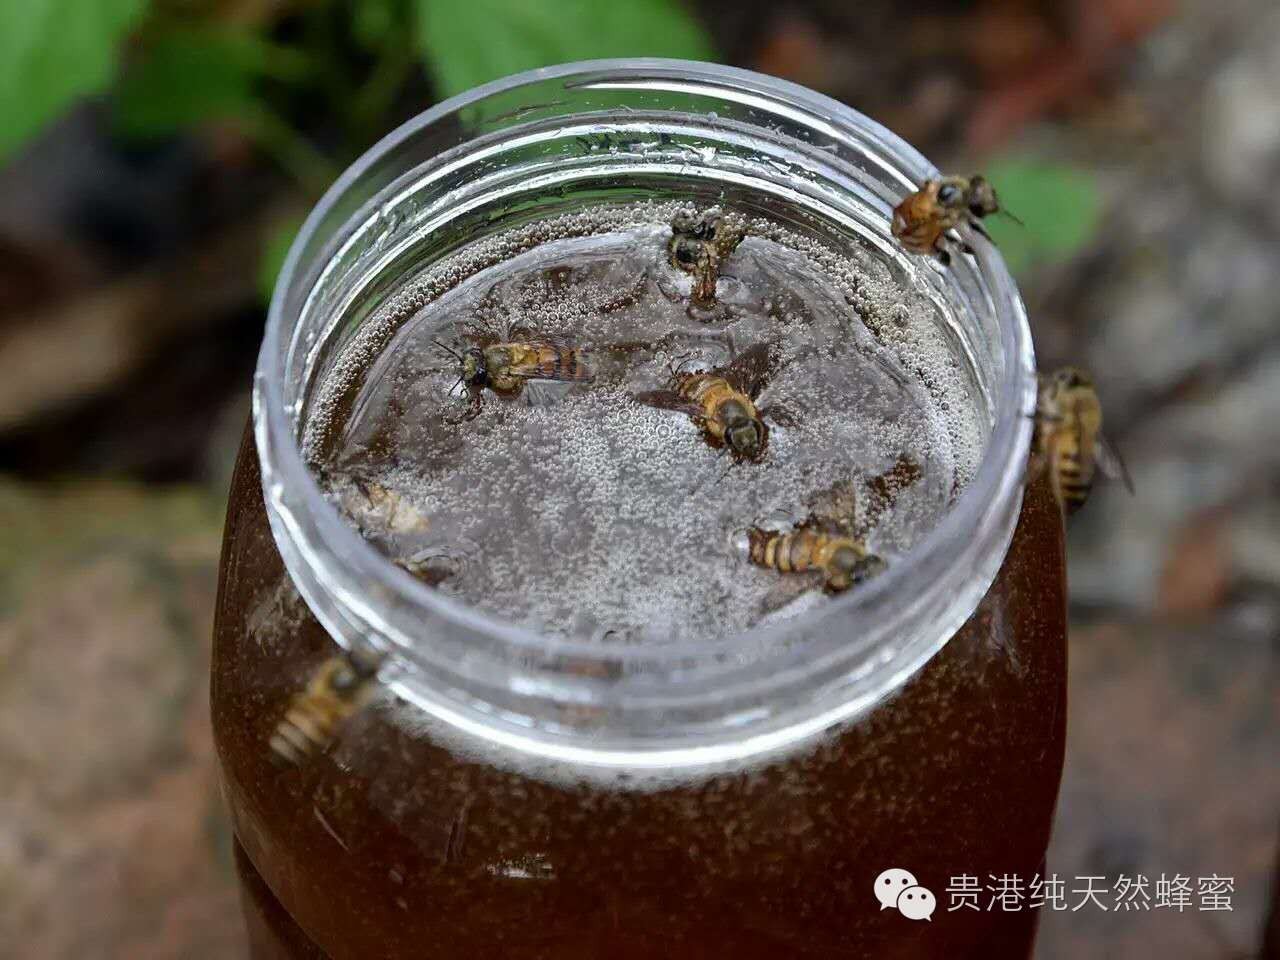 花粉蜂蜜 哪里可以买到真蜂蜜 蜂蜜 价格 蜂蜜进口关税 真假蜂蜜